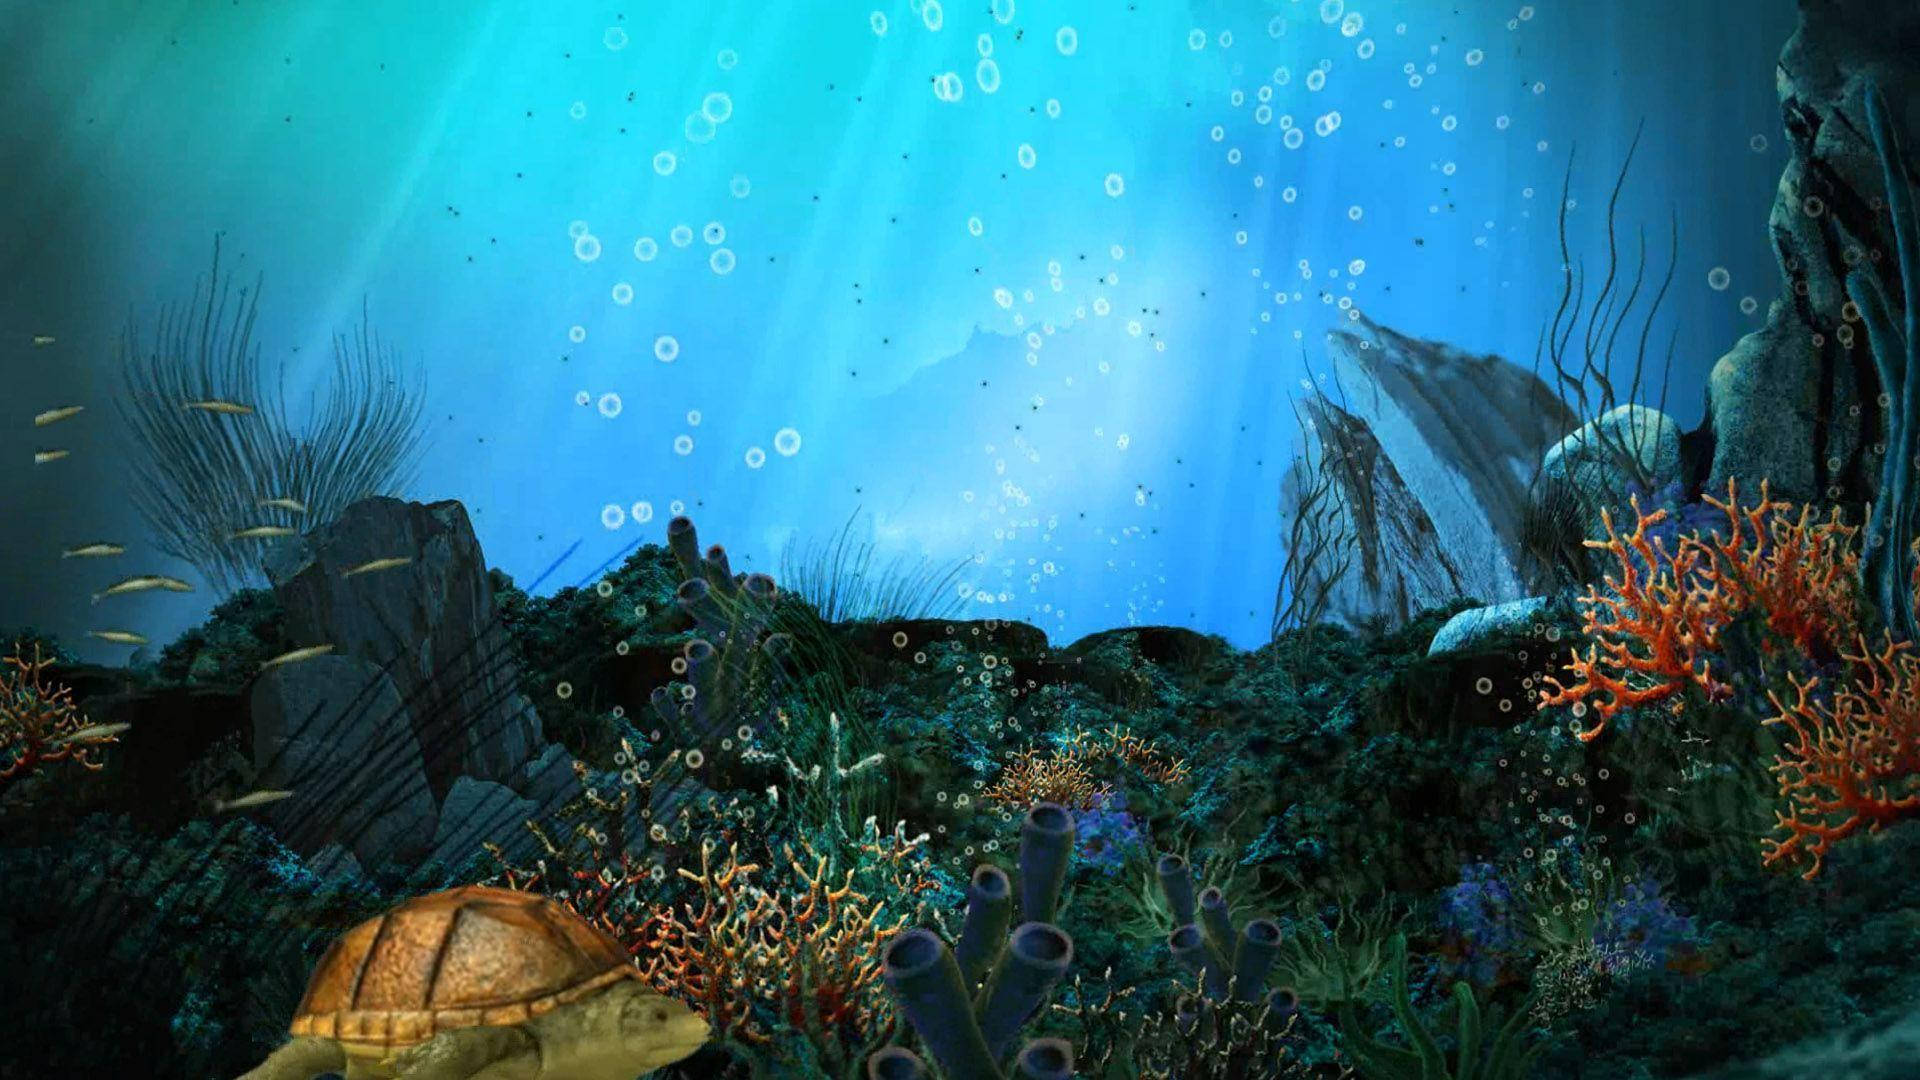 Download Aquatic Seascape With Corals Wallpaper